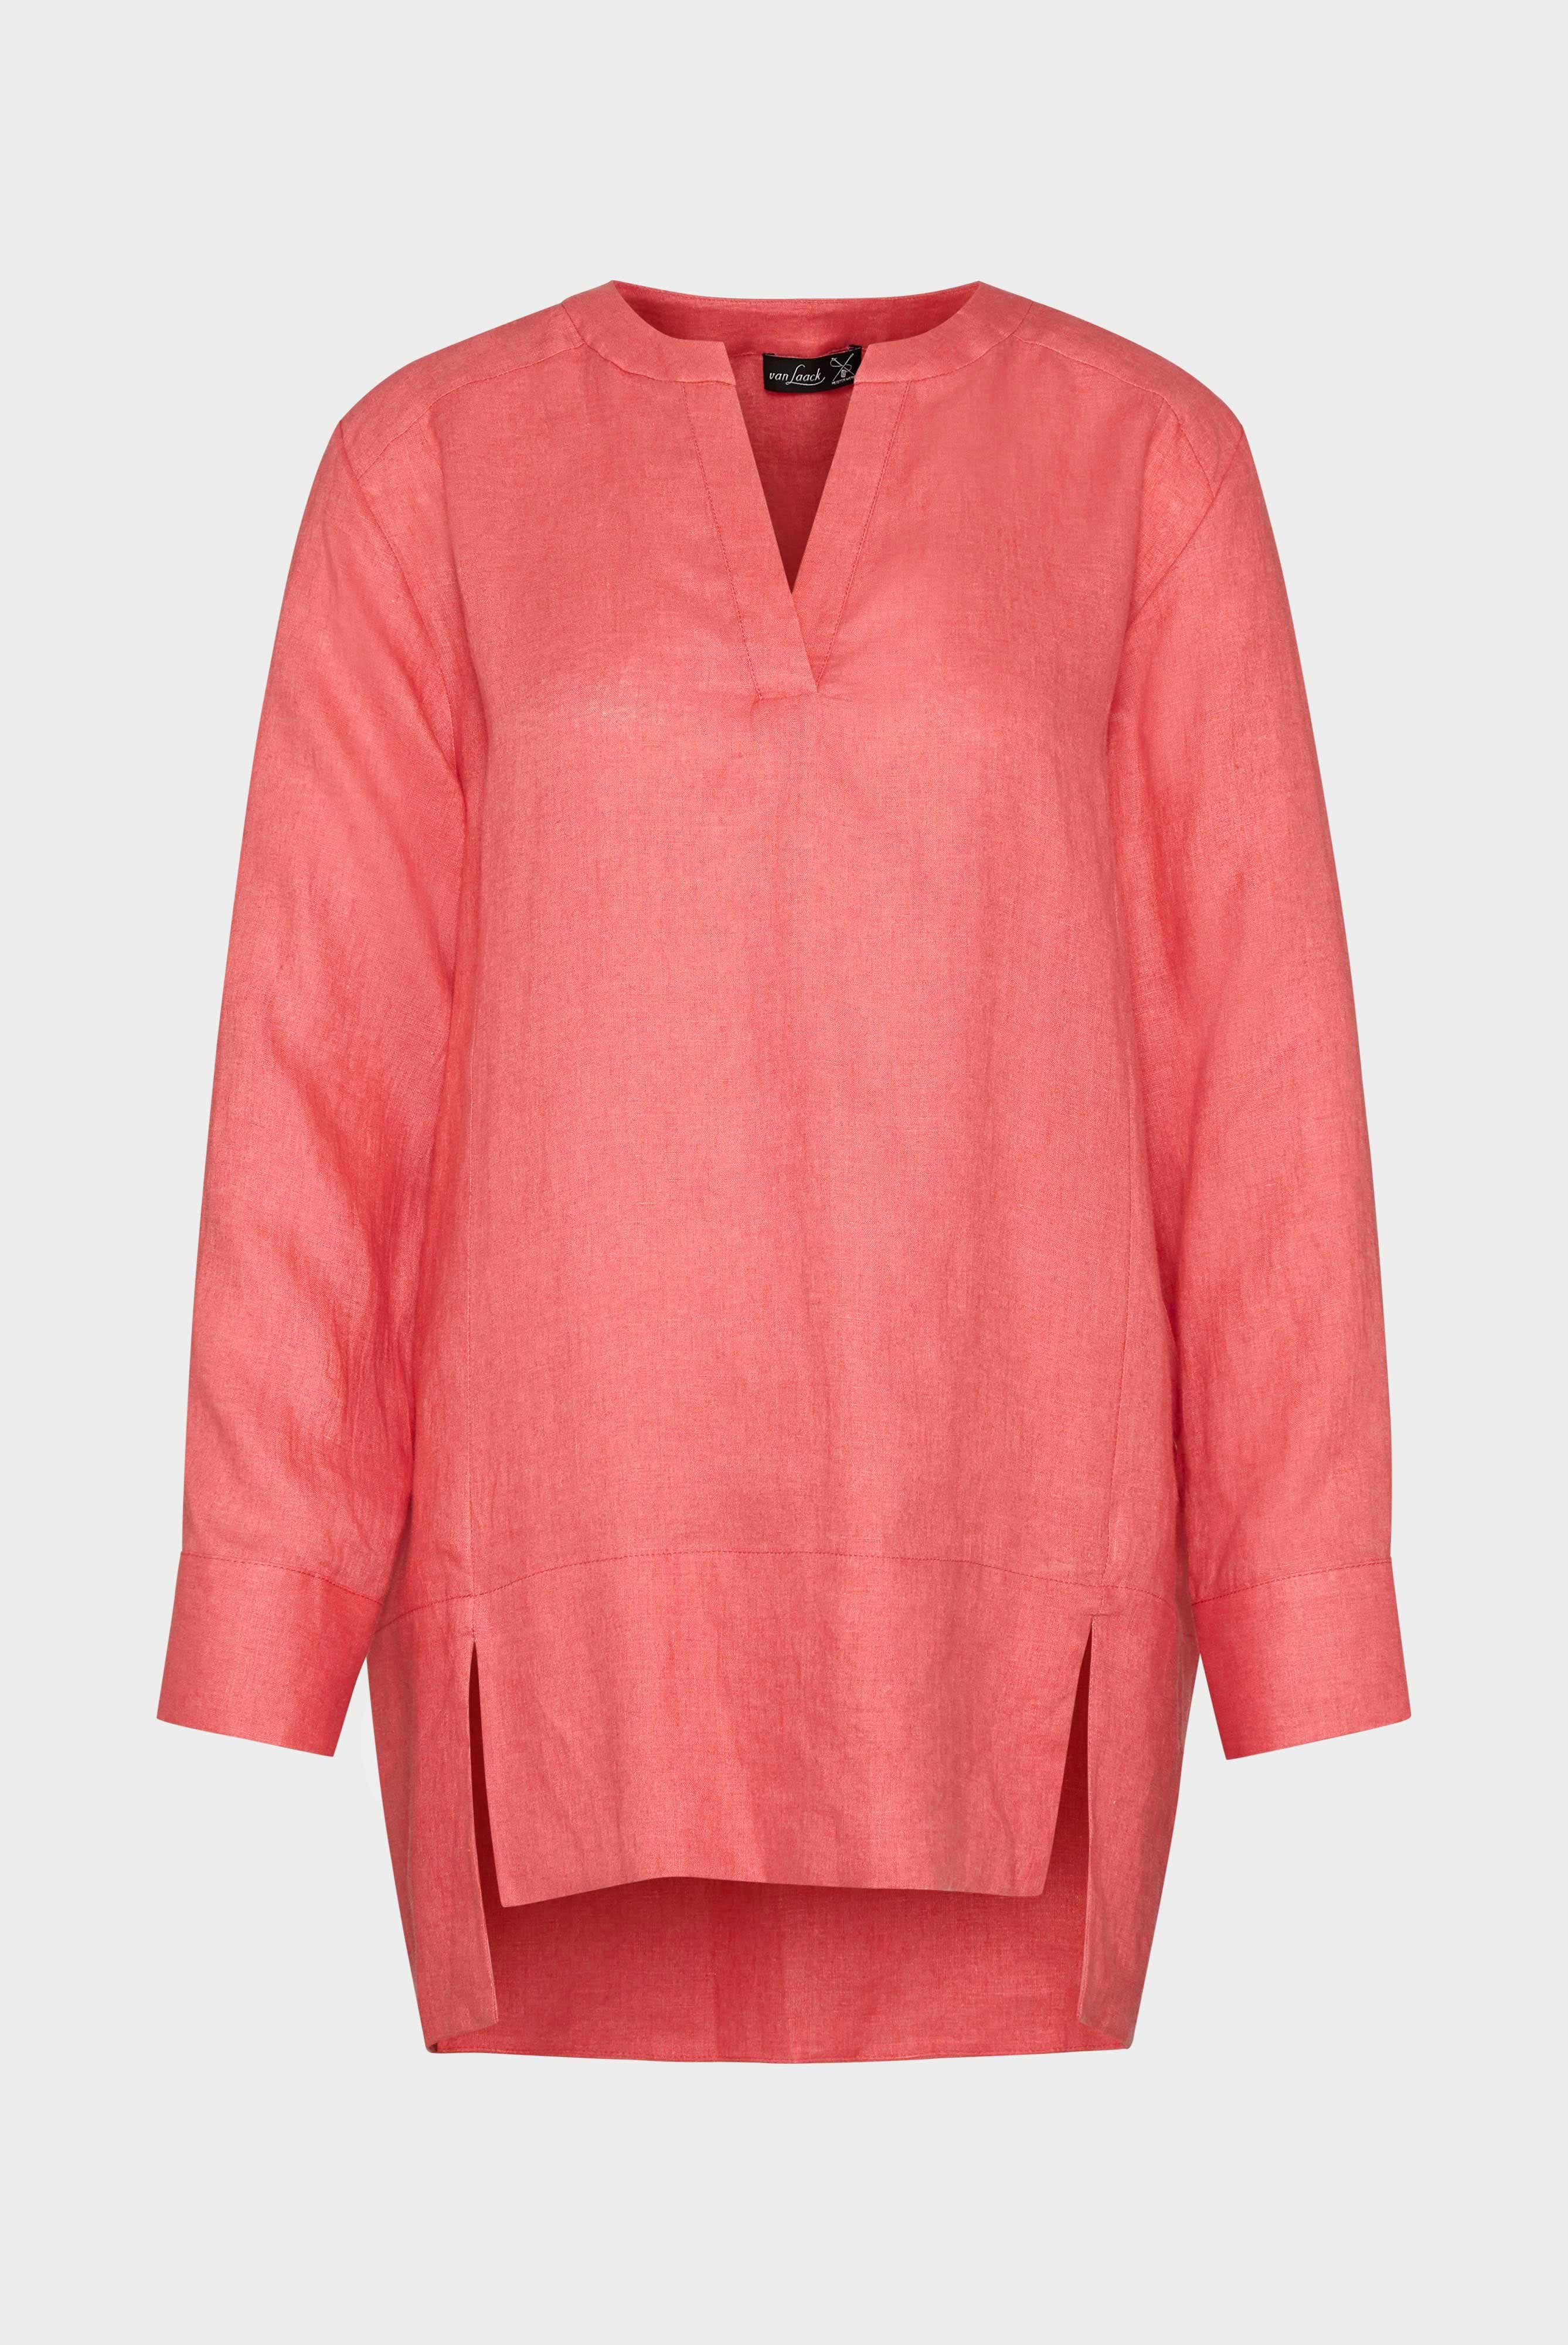 Casual Blouses+Linen tunic blouse+05.526H.P8.150555.440.36